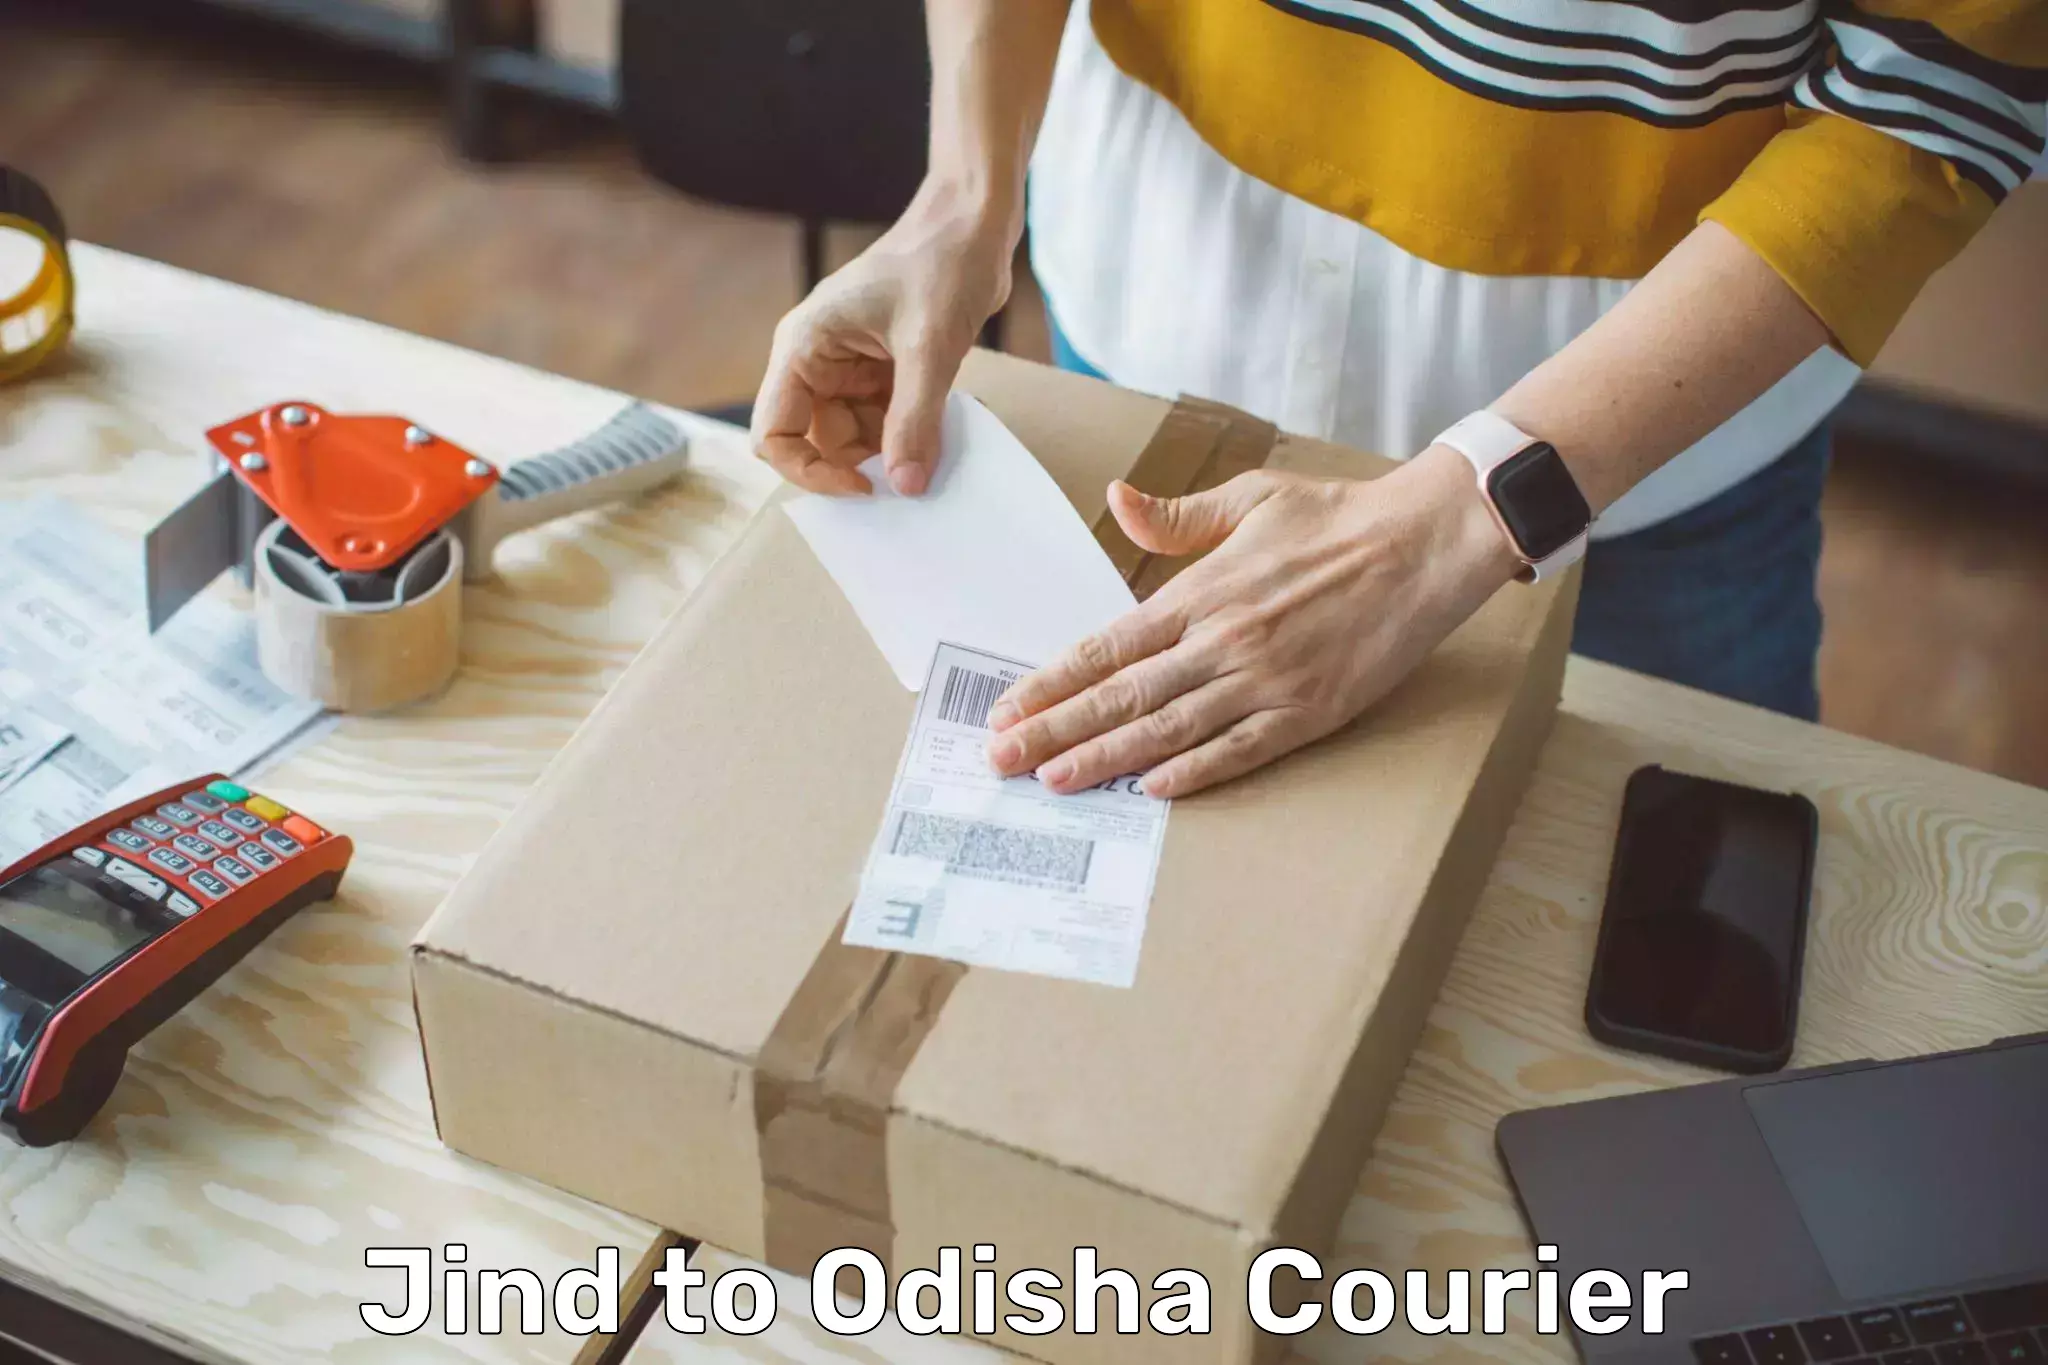 Courier insurance Jind to Odisha